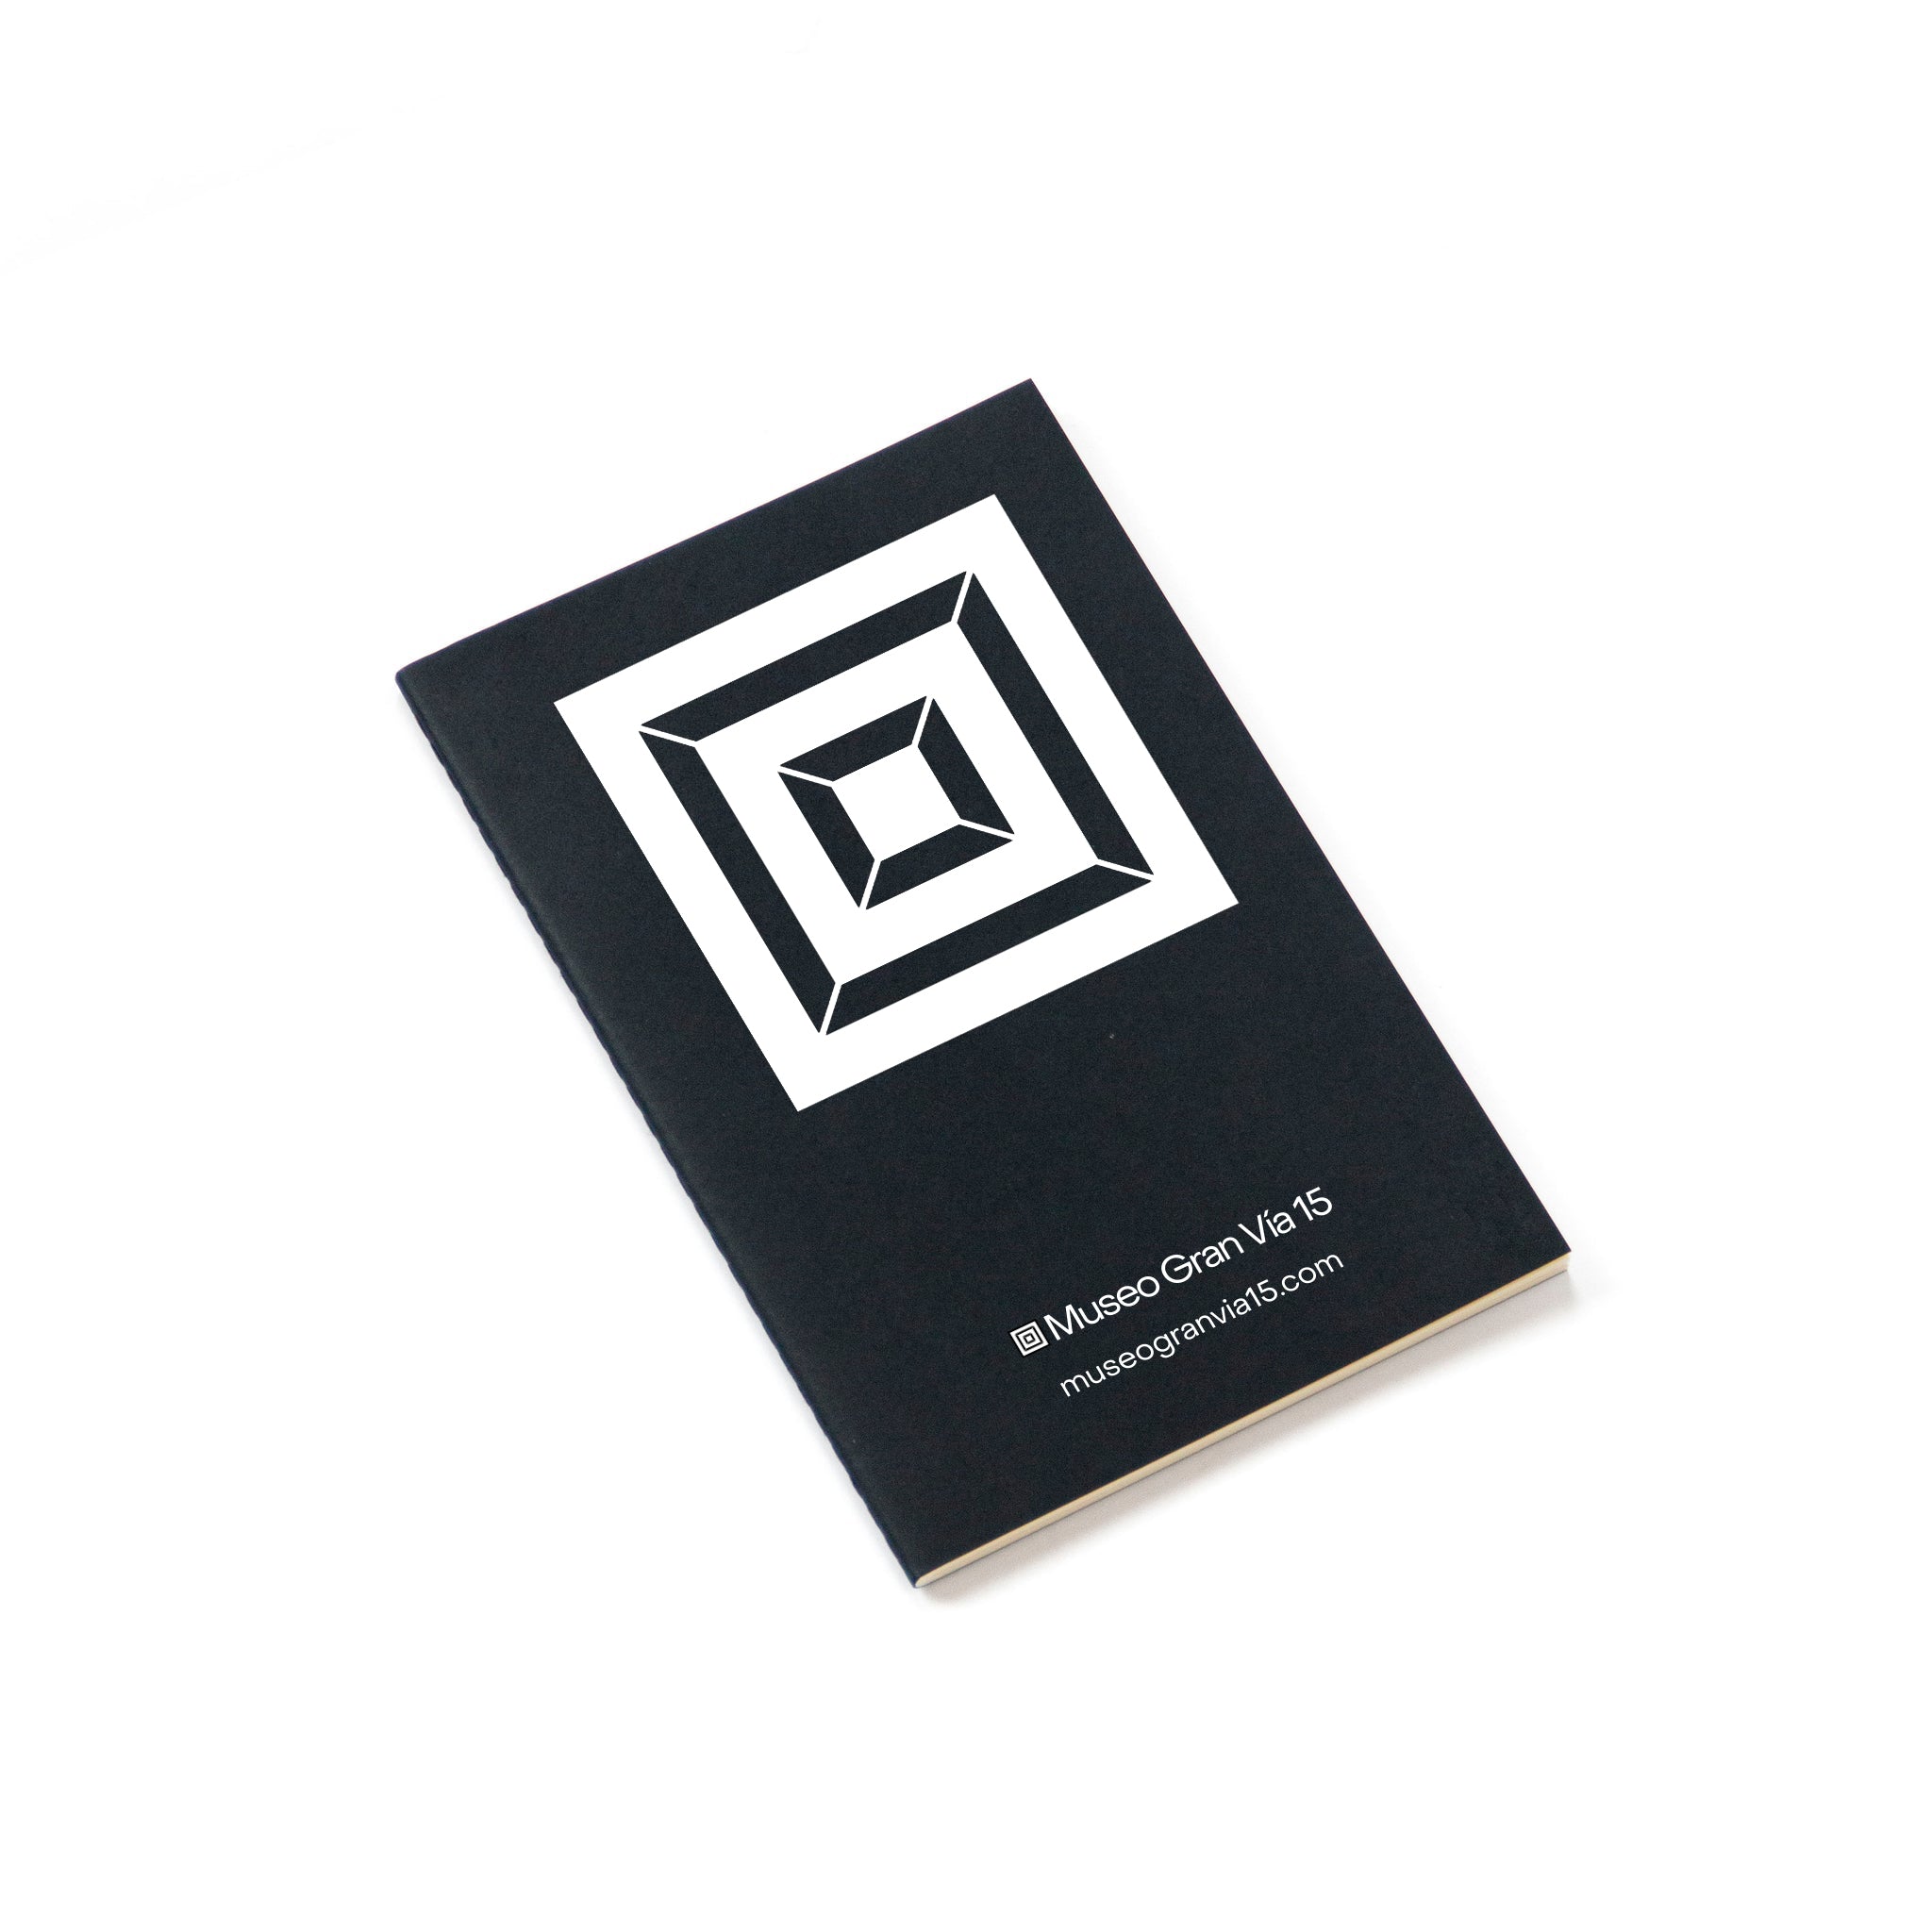 Custom notebook from Octàgon Design. Black cover